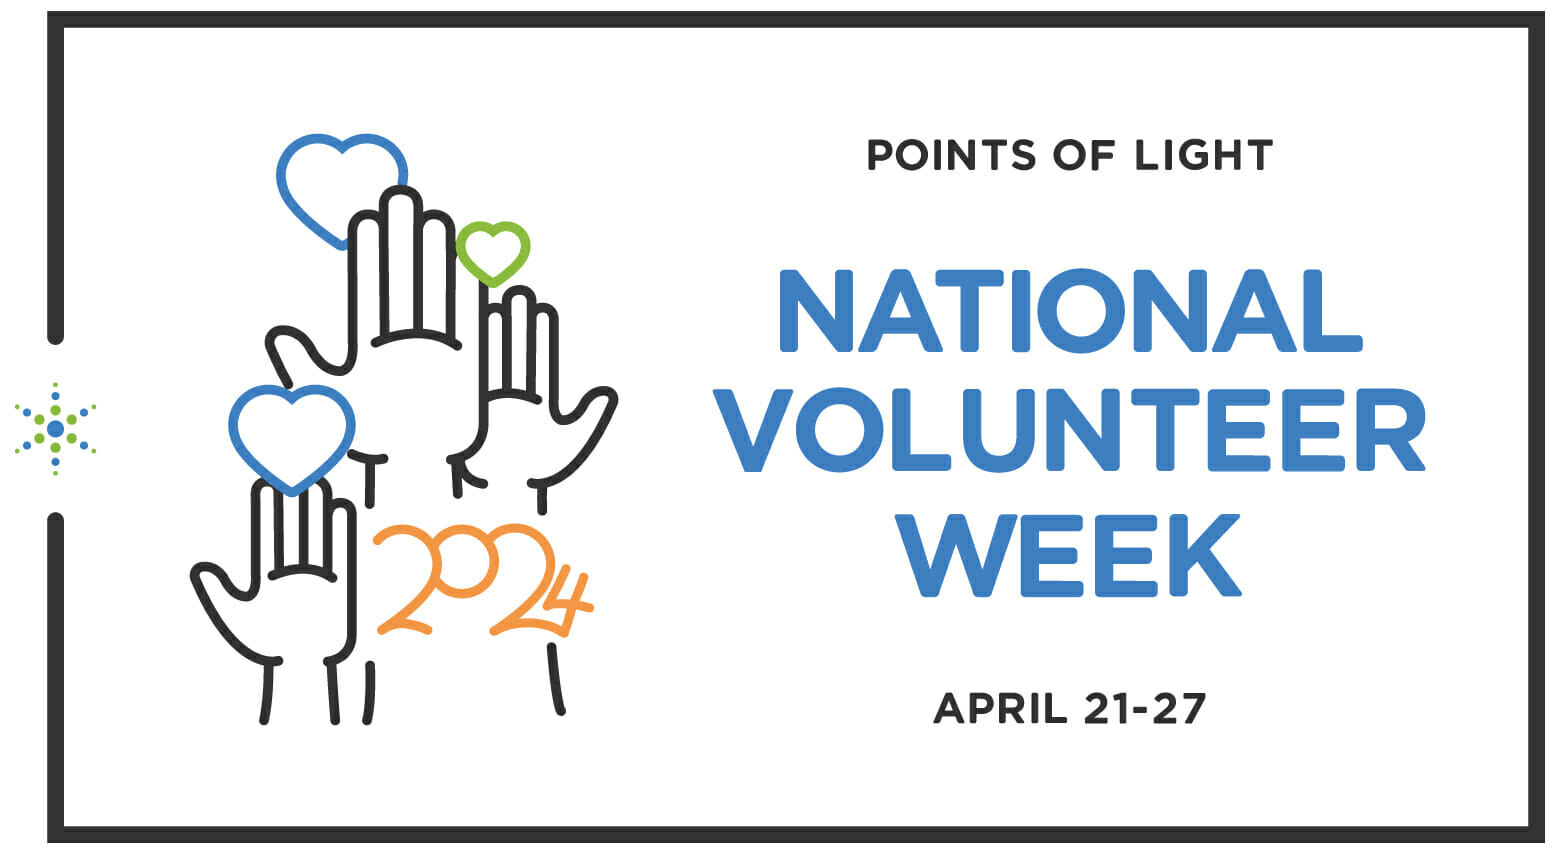 National Volunteer Week is April 21 - 27.